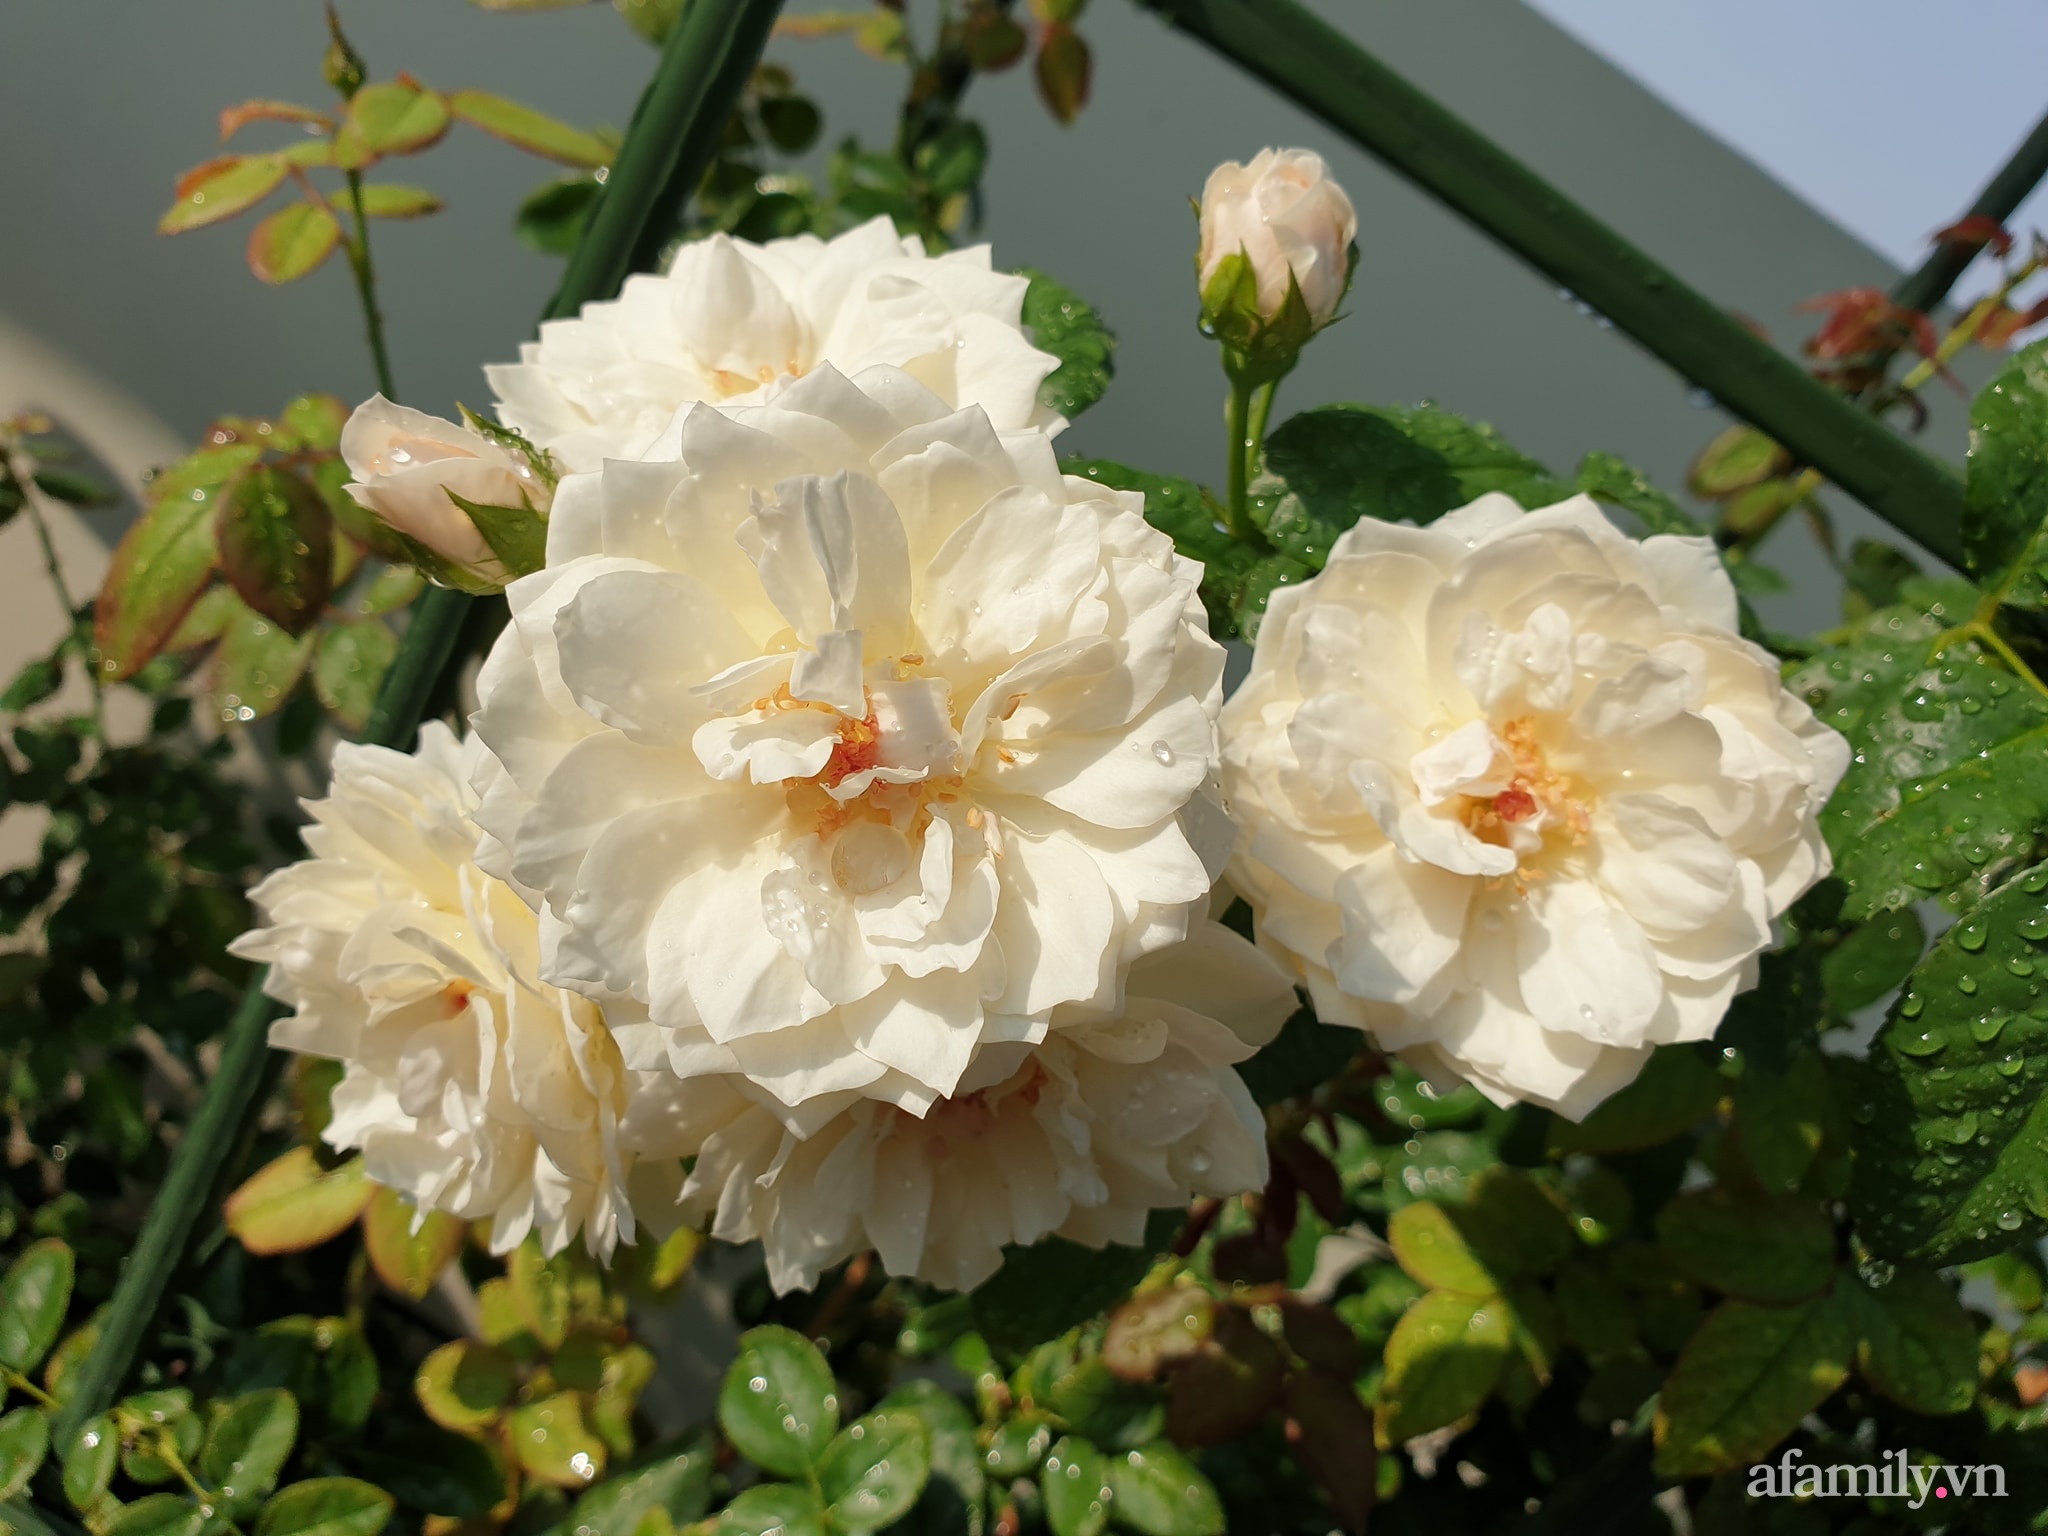 Đắm say trước vẻ đẹp ngọt lịm tim của vườn hồng rực rỡ trên sân thượng ở Bình Dương - Ảnh 18.